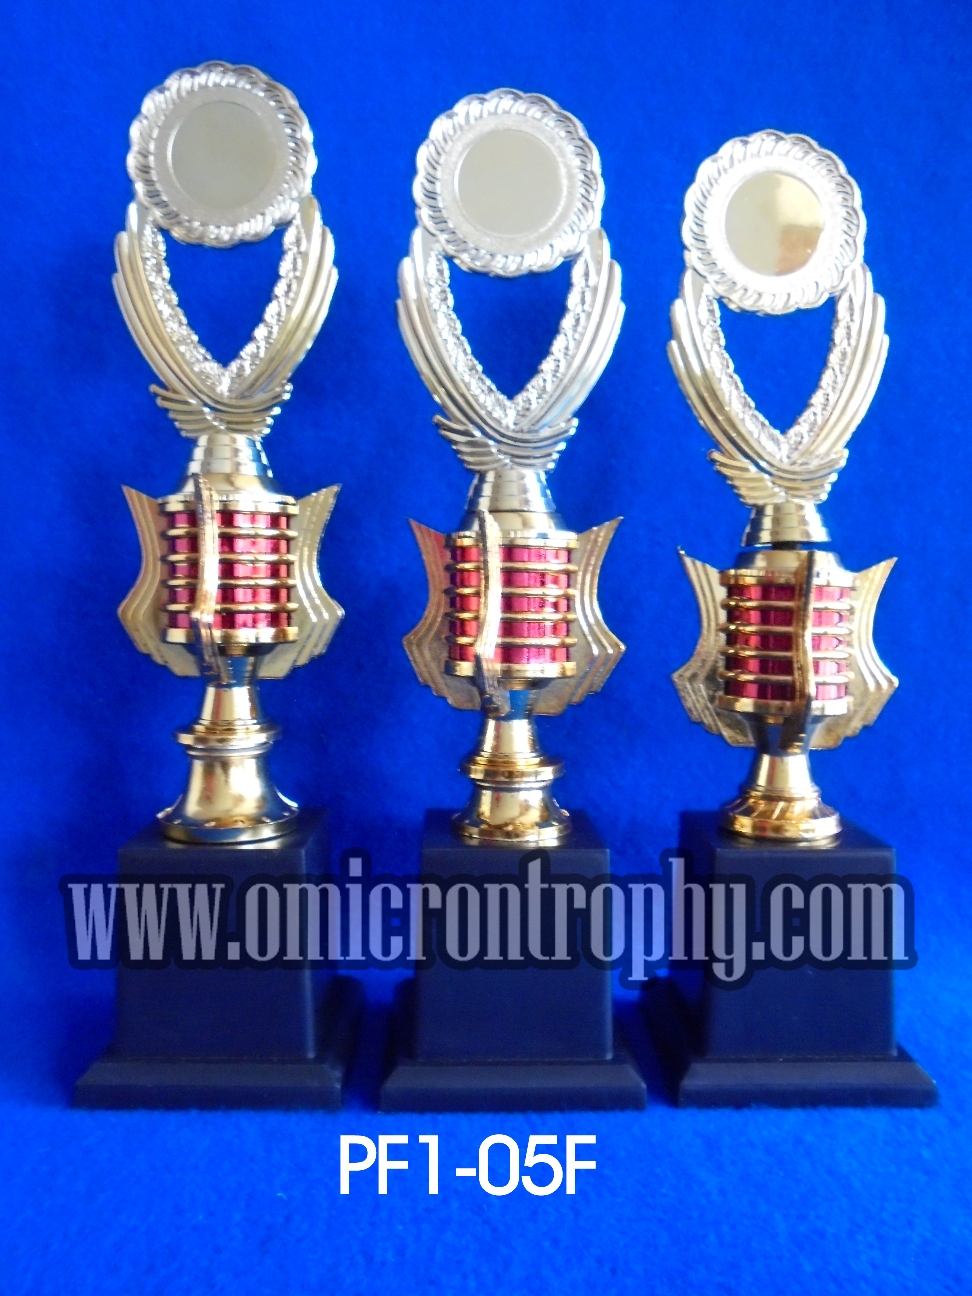 Jual Trophy Murah, Harga Trophy Murah, Pemesanan Trophy Harga Murah